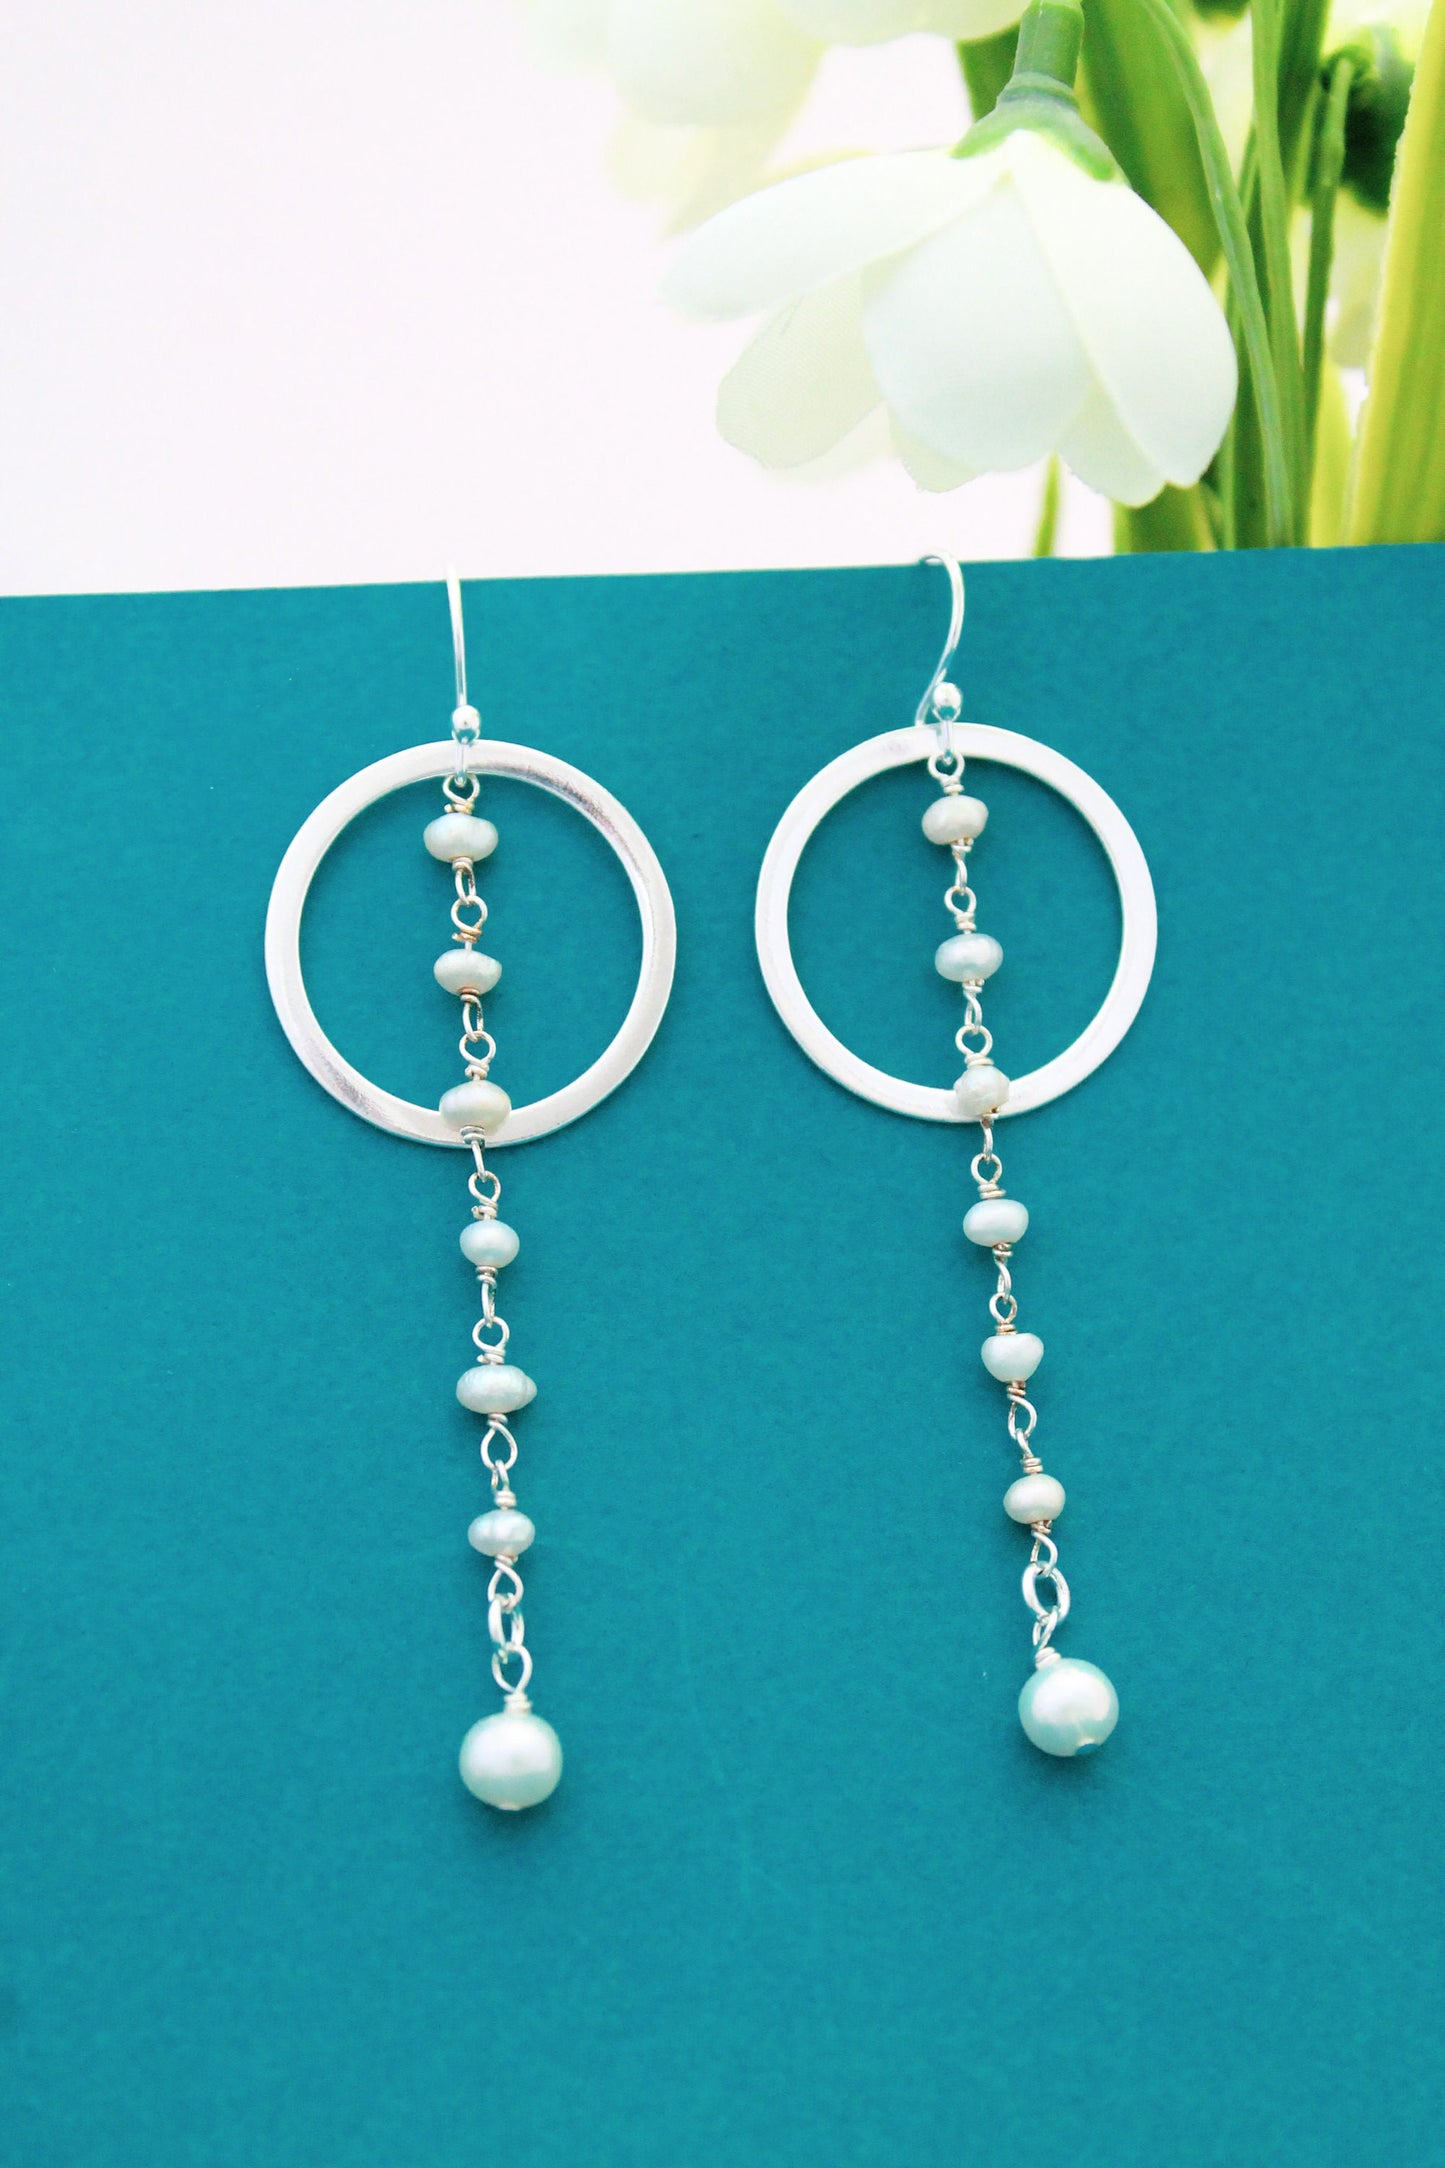 Classic Pearl Dangling Hoop Earrings, Freshwater Pearl Earrings, White Pearl Earrings, Silver Pearl Earrings, Wedding Earrings, Layered